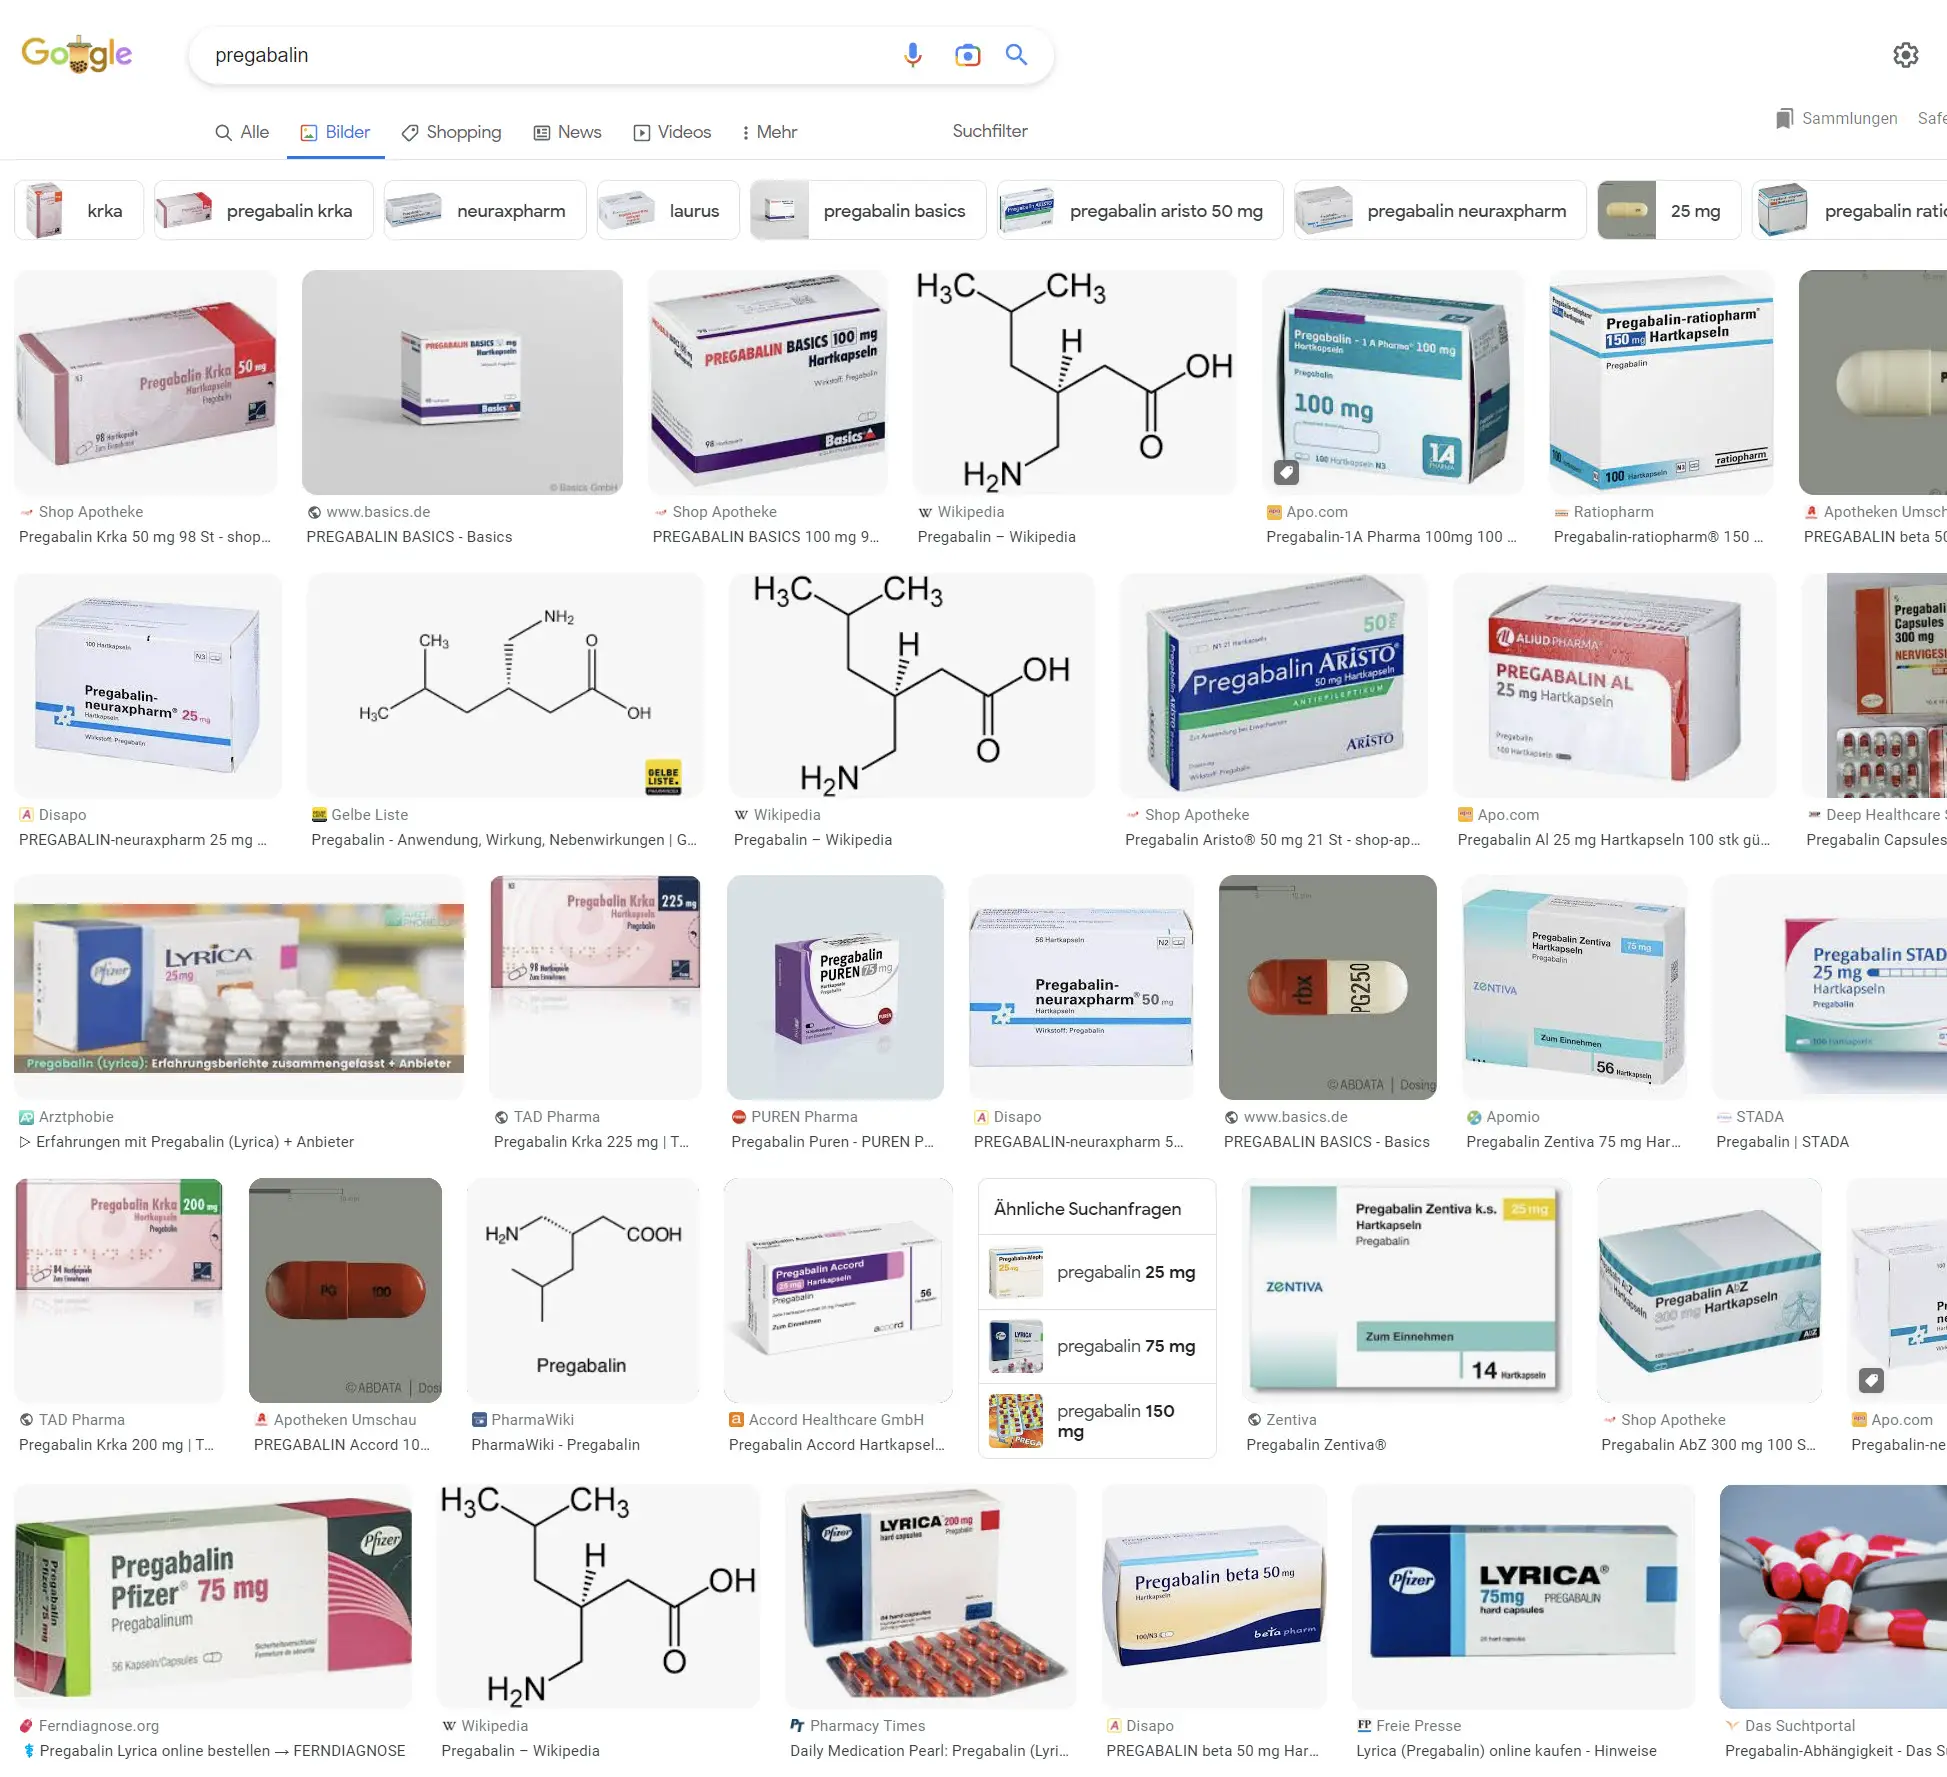 Neuraxpharm, Stada, 1A, Aristo, Pfizer ... - eine Google Bildersuche zeigt, wie viele Hersteller / Marken es von den Pregabalin / Lyrica Hartkapseln am Markt gibt ...